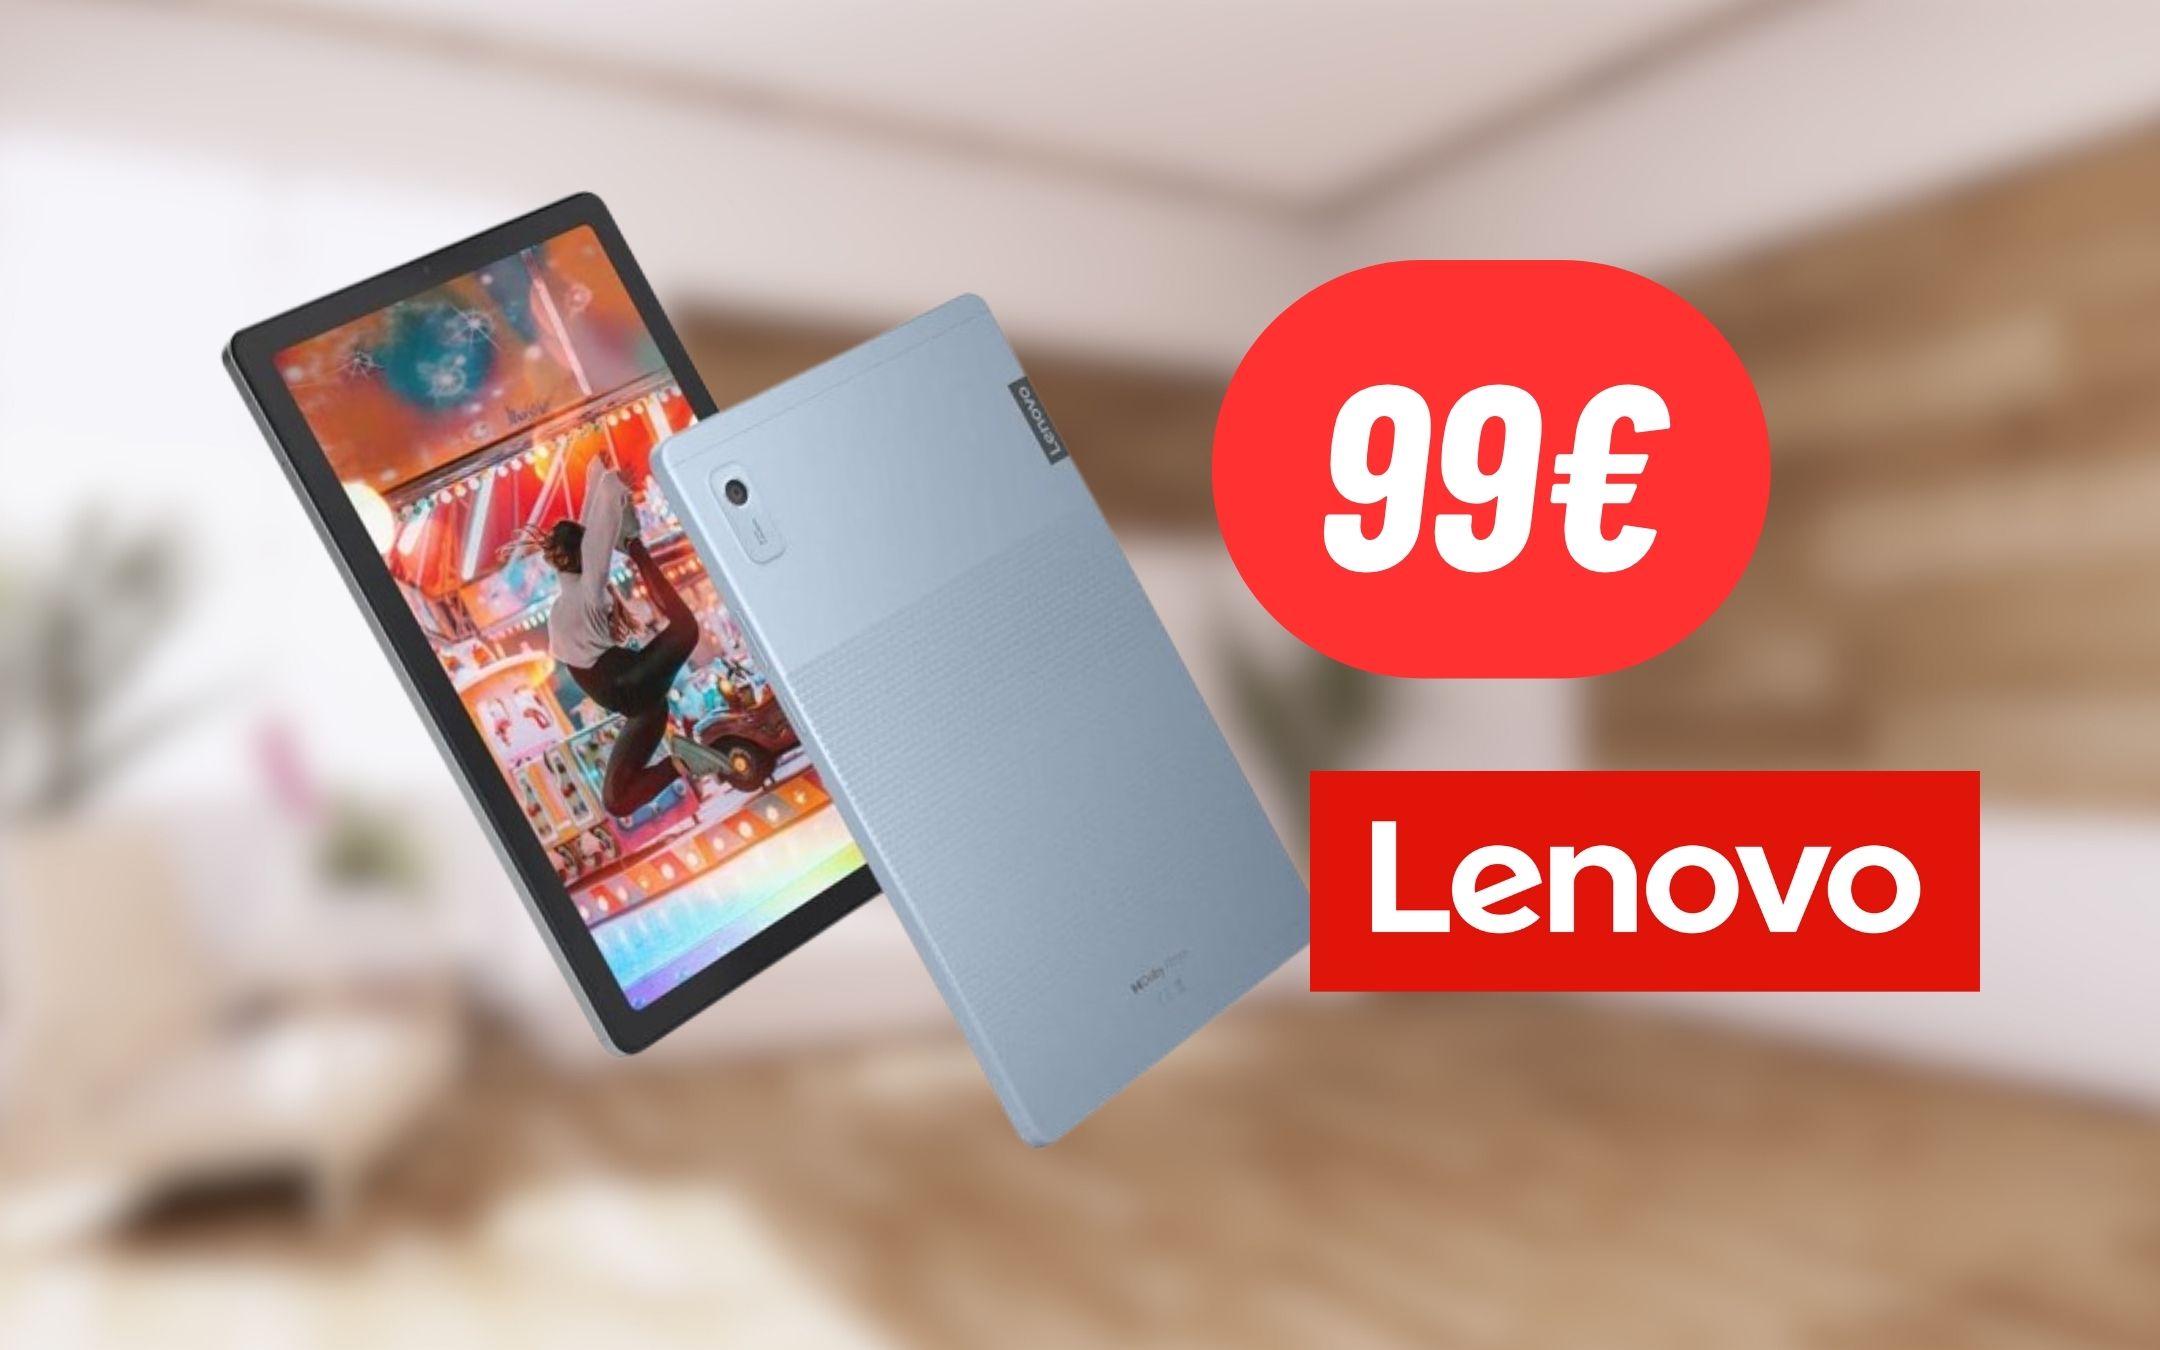 Tablet Lenovo a 99€: occasione imperdibile